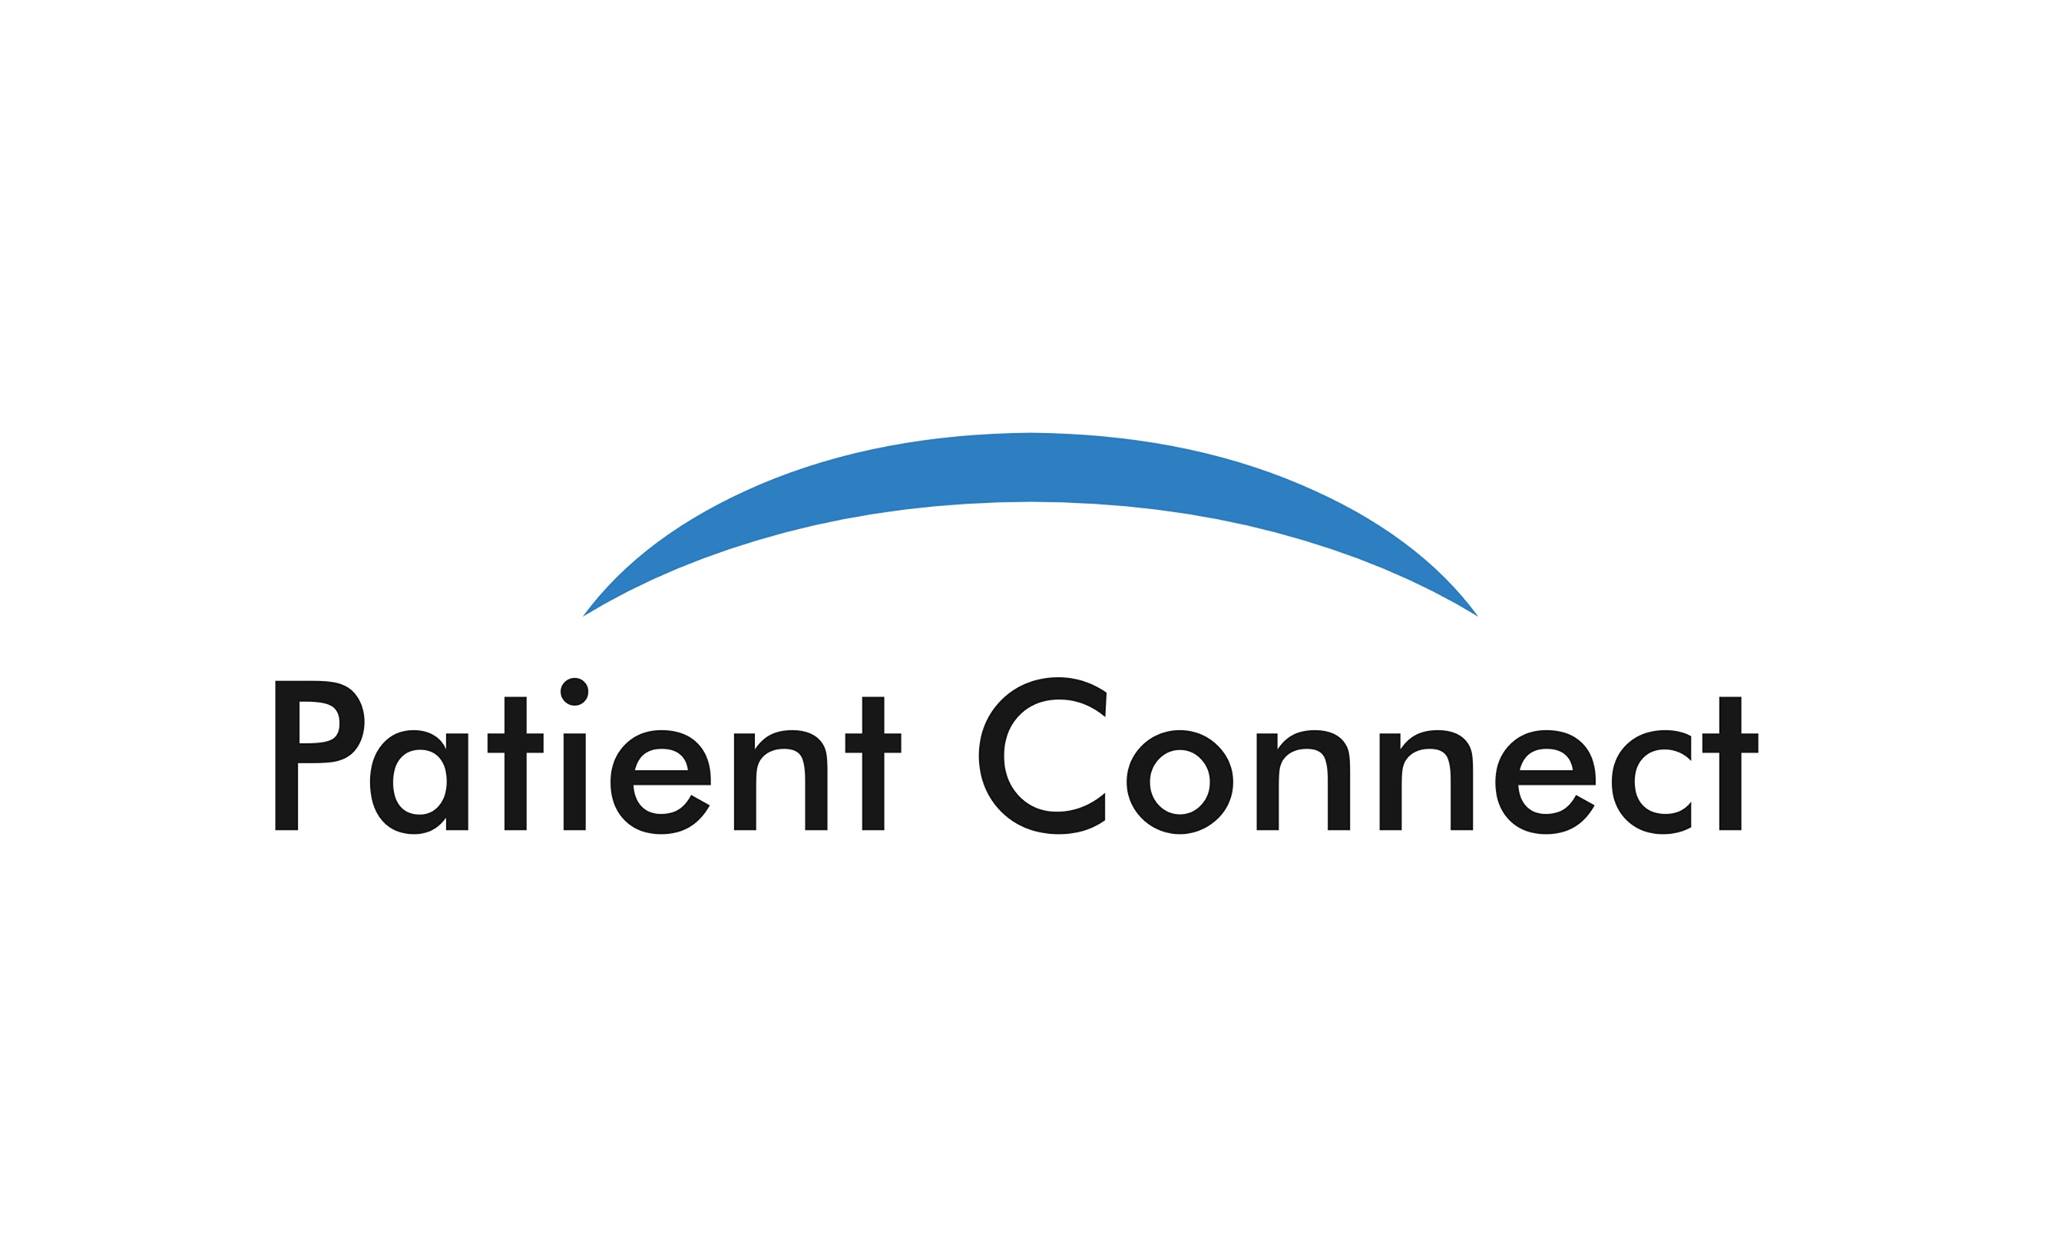 Patient Connect